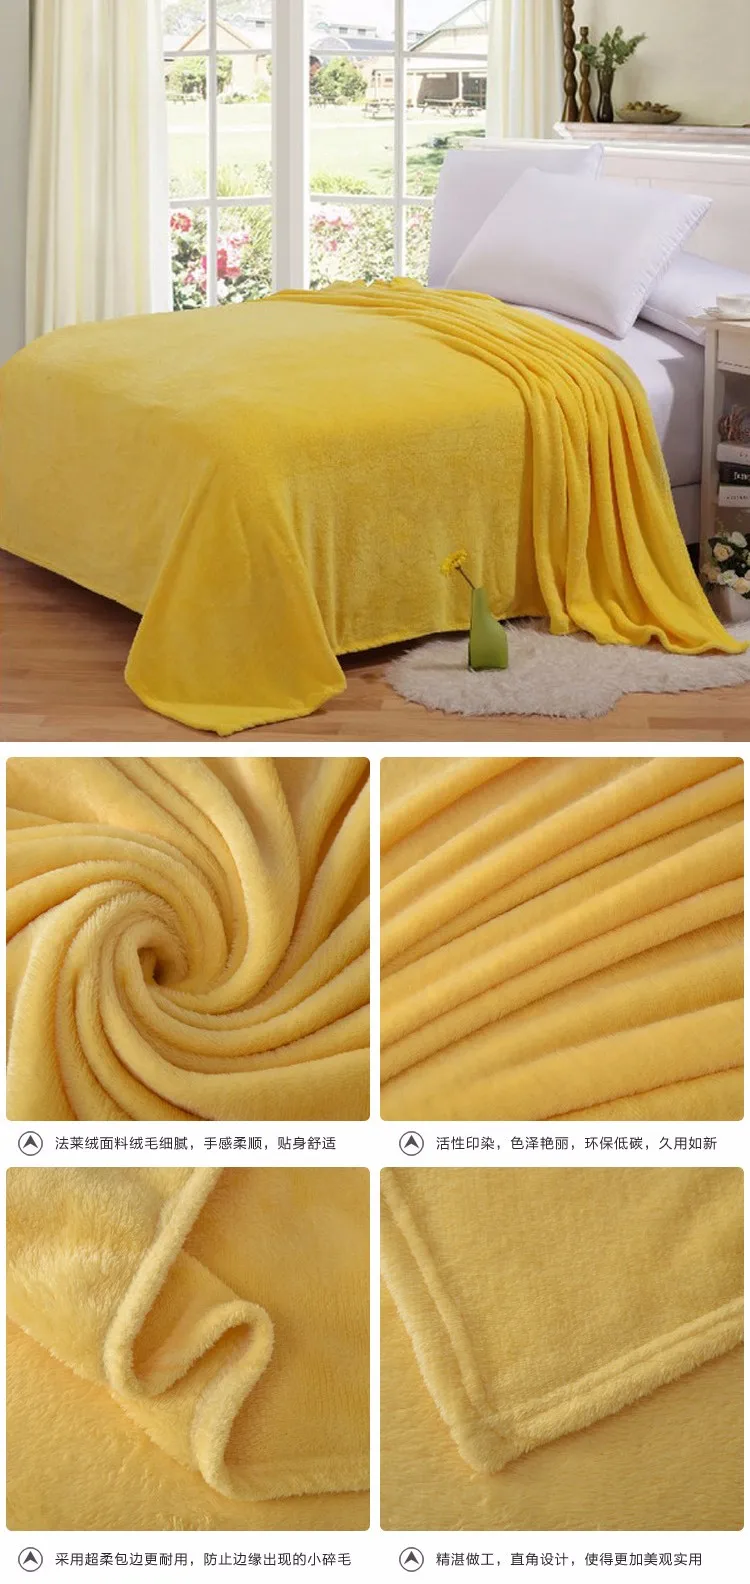 150*200 см 180*200 см 200*230 см Фланелевое однотонное одеяло для дивана, постельных принадлежностей, мягкая зимняя простыня в клетку